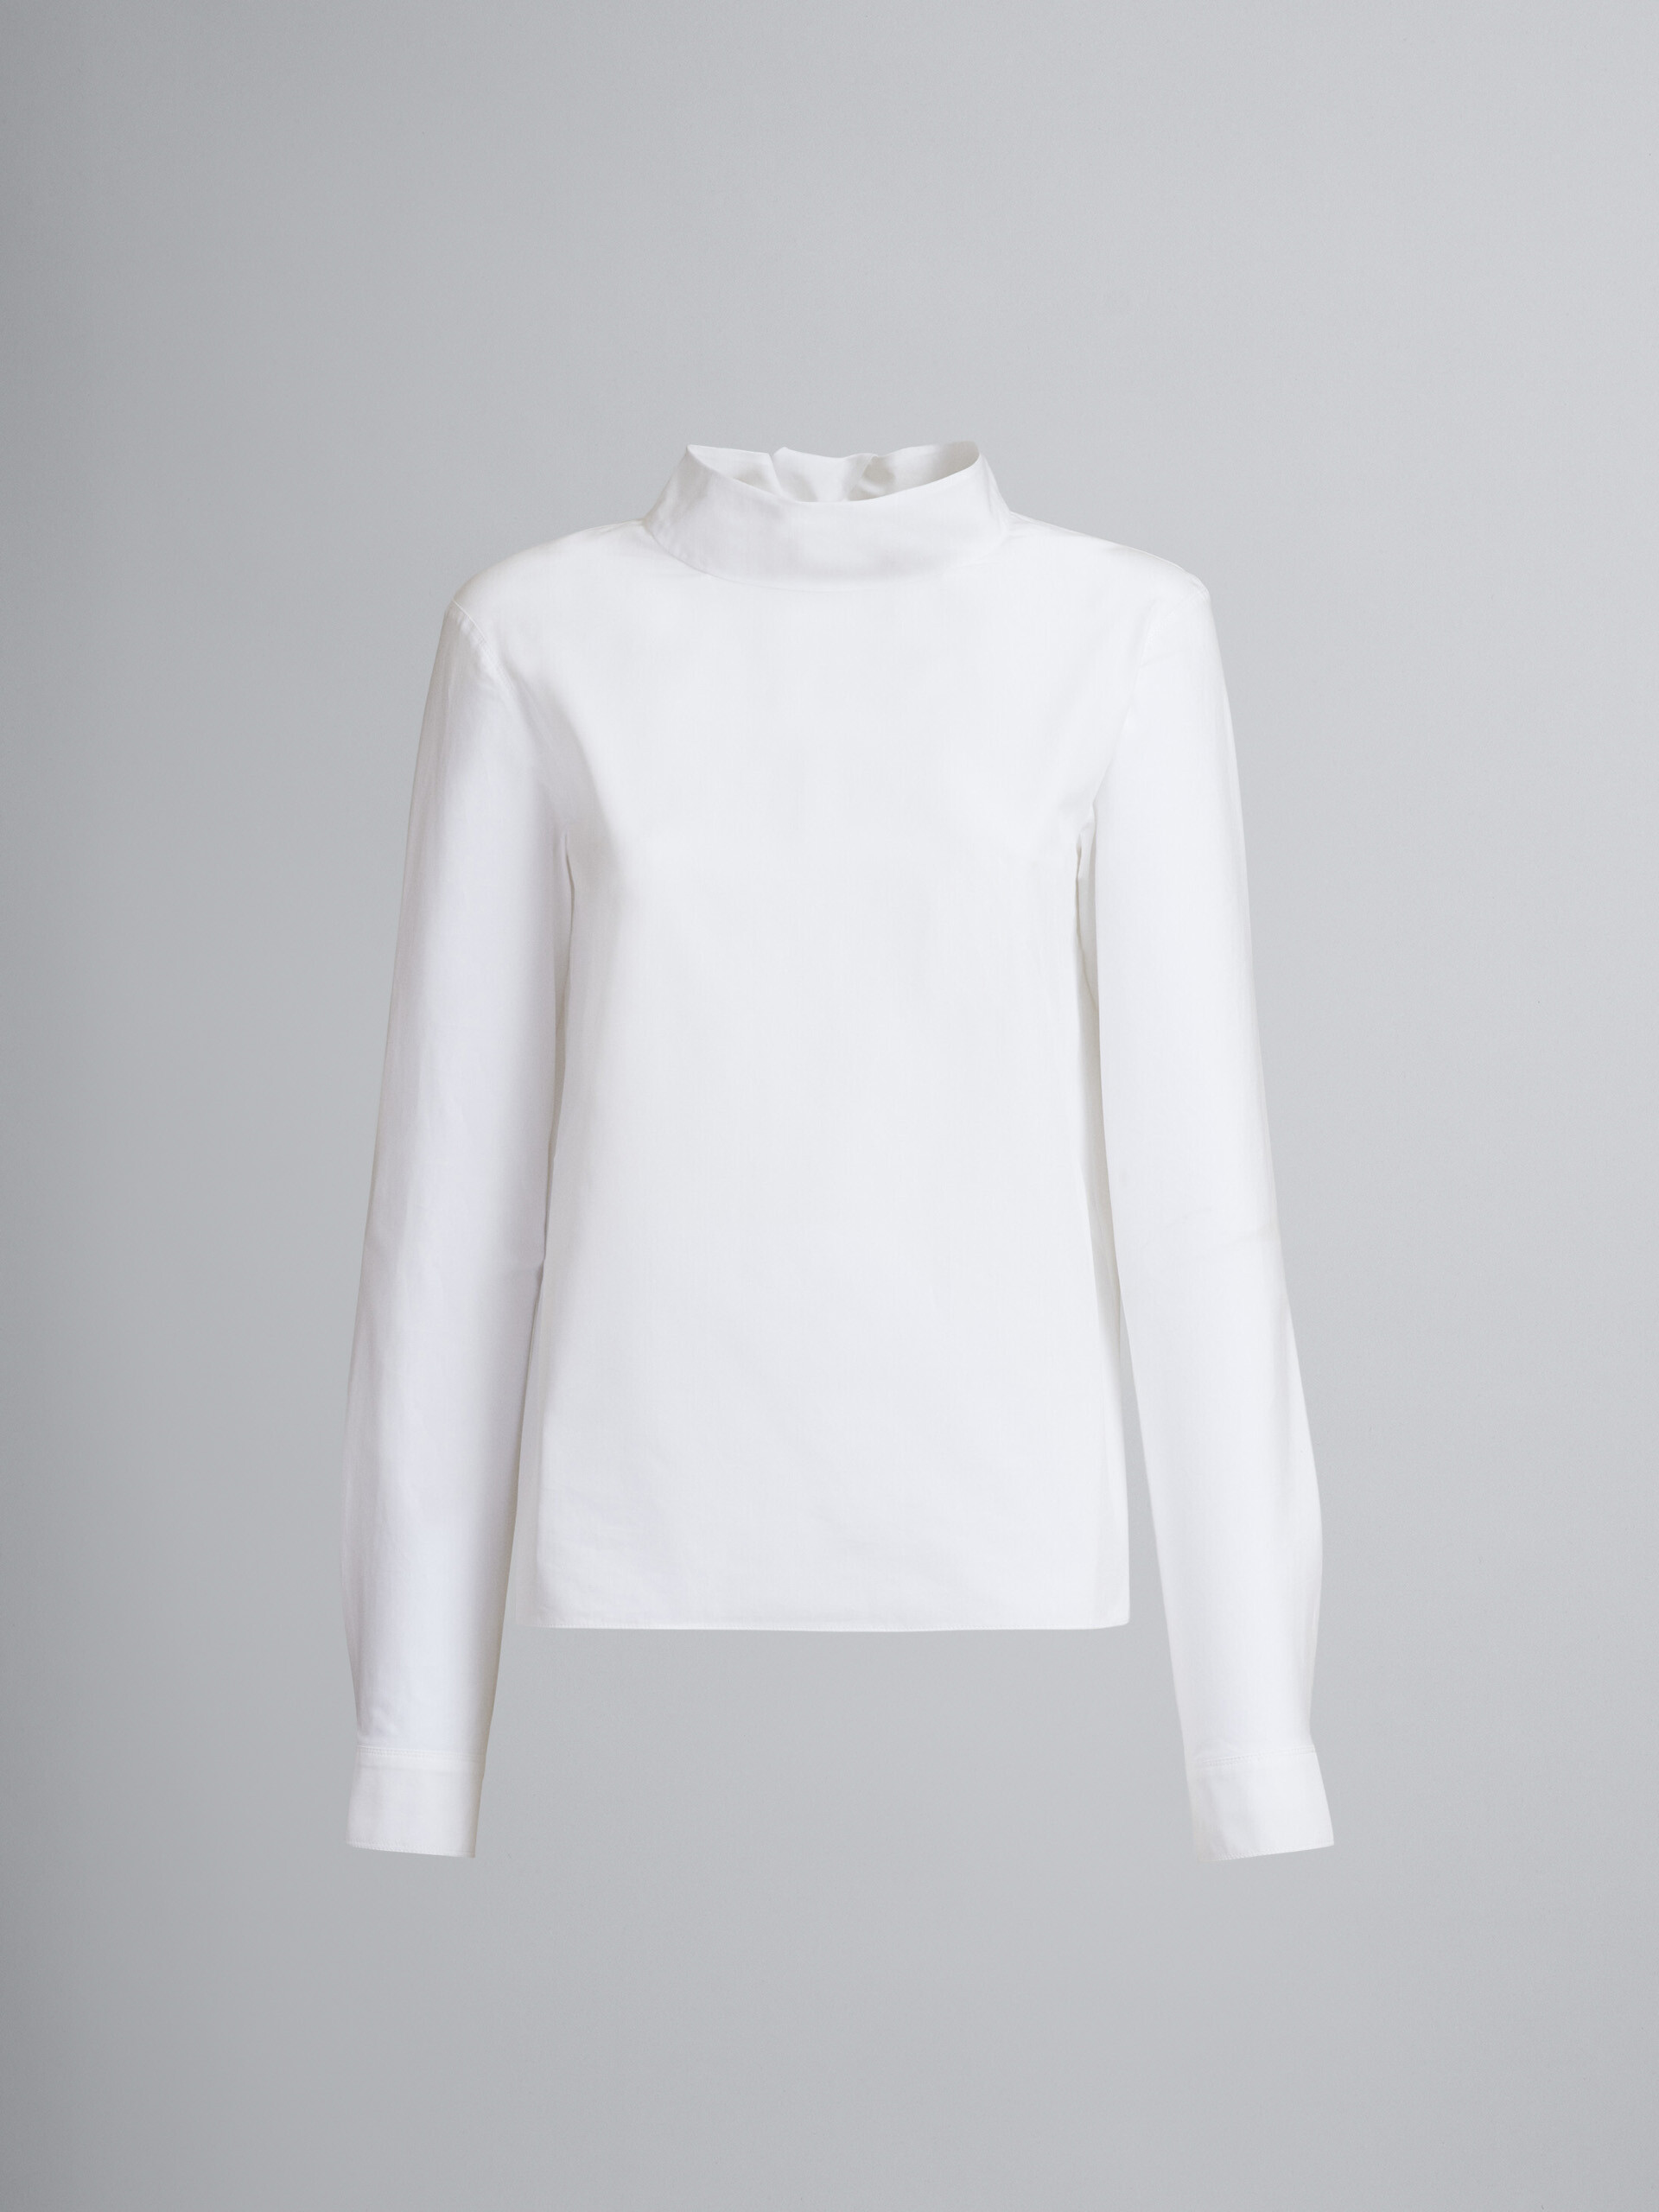 뒷면에 매듭진 라발리에르 칼라의 화이트 코튼 포플린 블라우스 - Shirts - Image 1